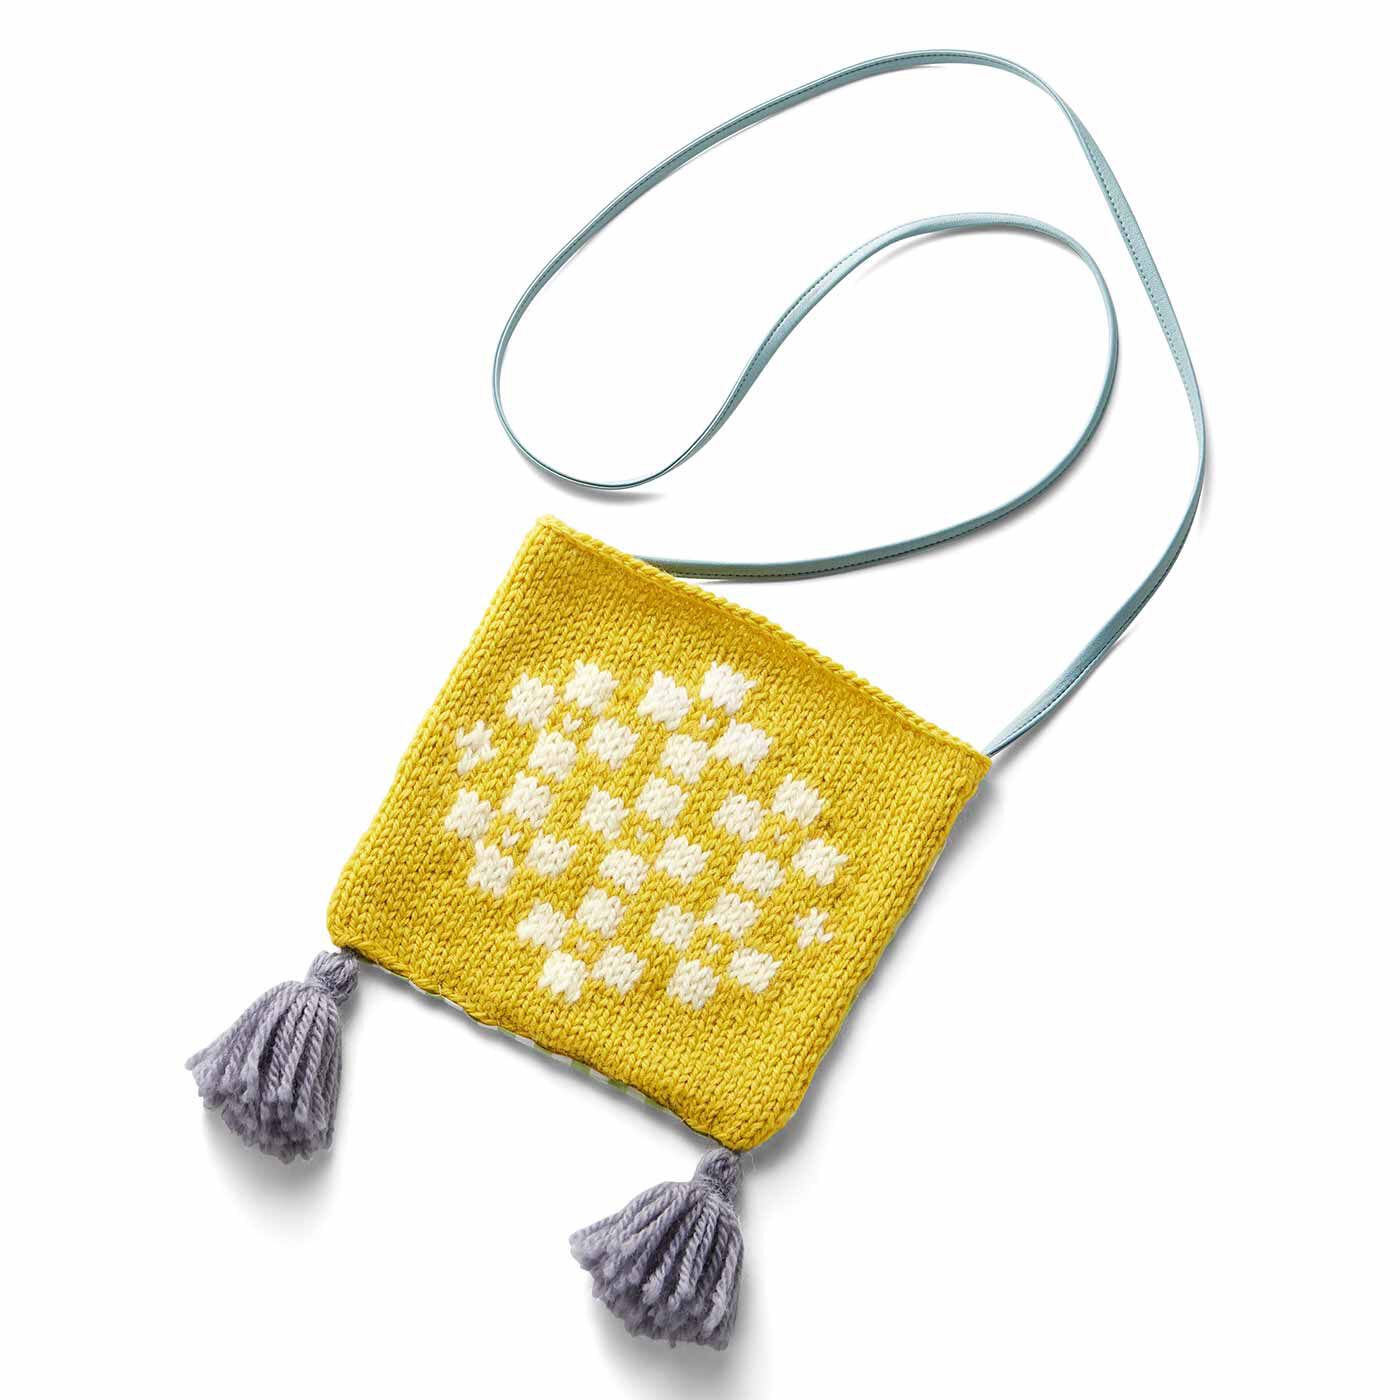 クチュリエ|自然からの贈りもの めくるめく北欧模様を楽しむ棒針編みサンプラーの会|2枚でミニバッグに。